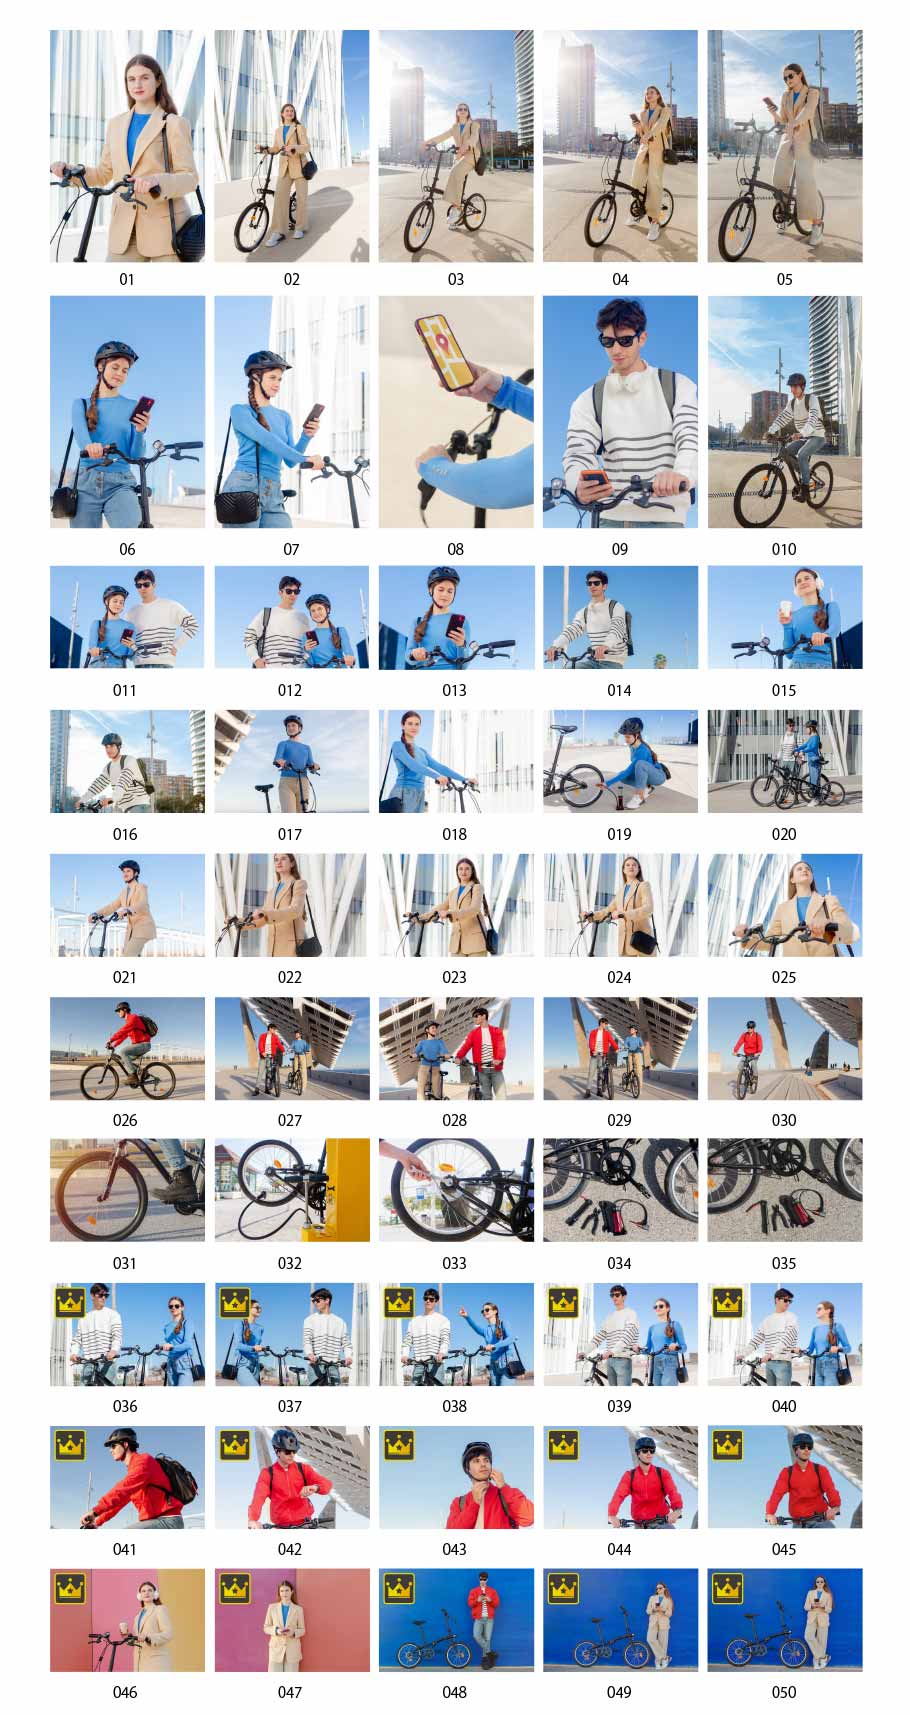 ภาพถ่ายการใช้ชีวิตและการเดินทางด้วยจักรยาน